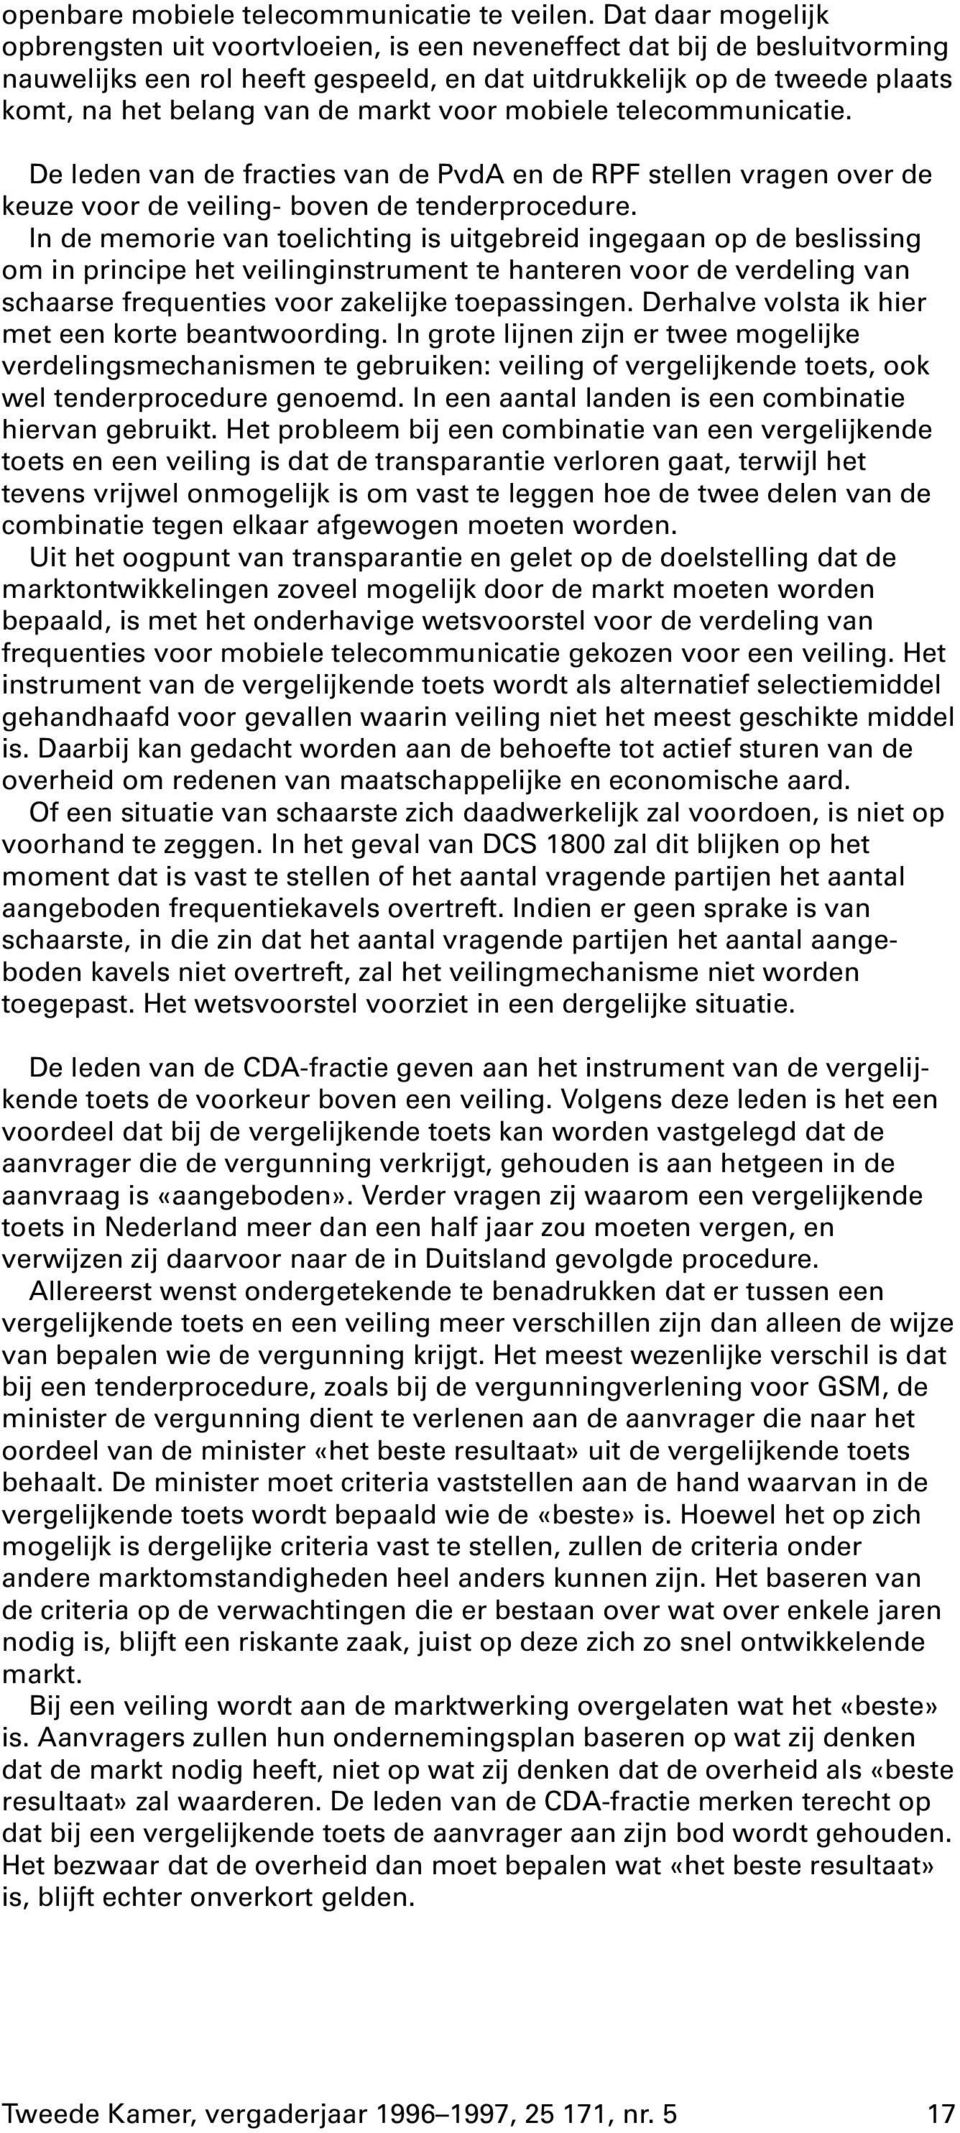 markt voor mobiele telecommunicatie. De leden van de fracties van de PvdA en de RPF stellen vragen over de keuze voor de veiling- boven de tenderprocedure.